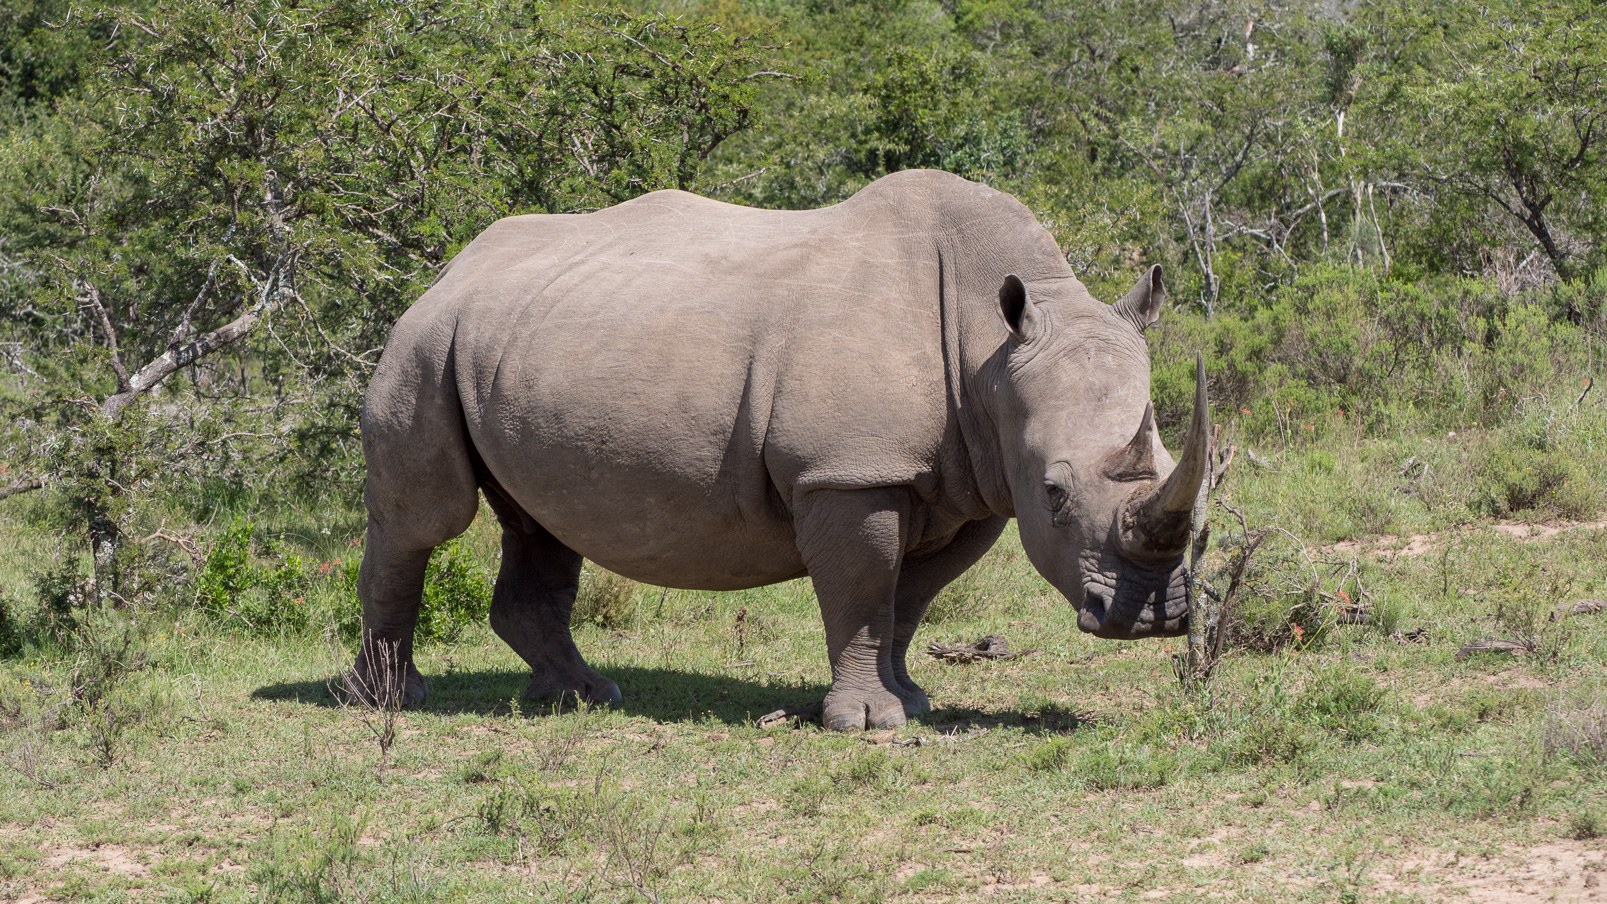 Les néerlandais parlent de rhinocéros blanc (witte neushoorn).